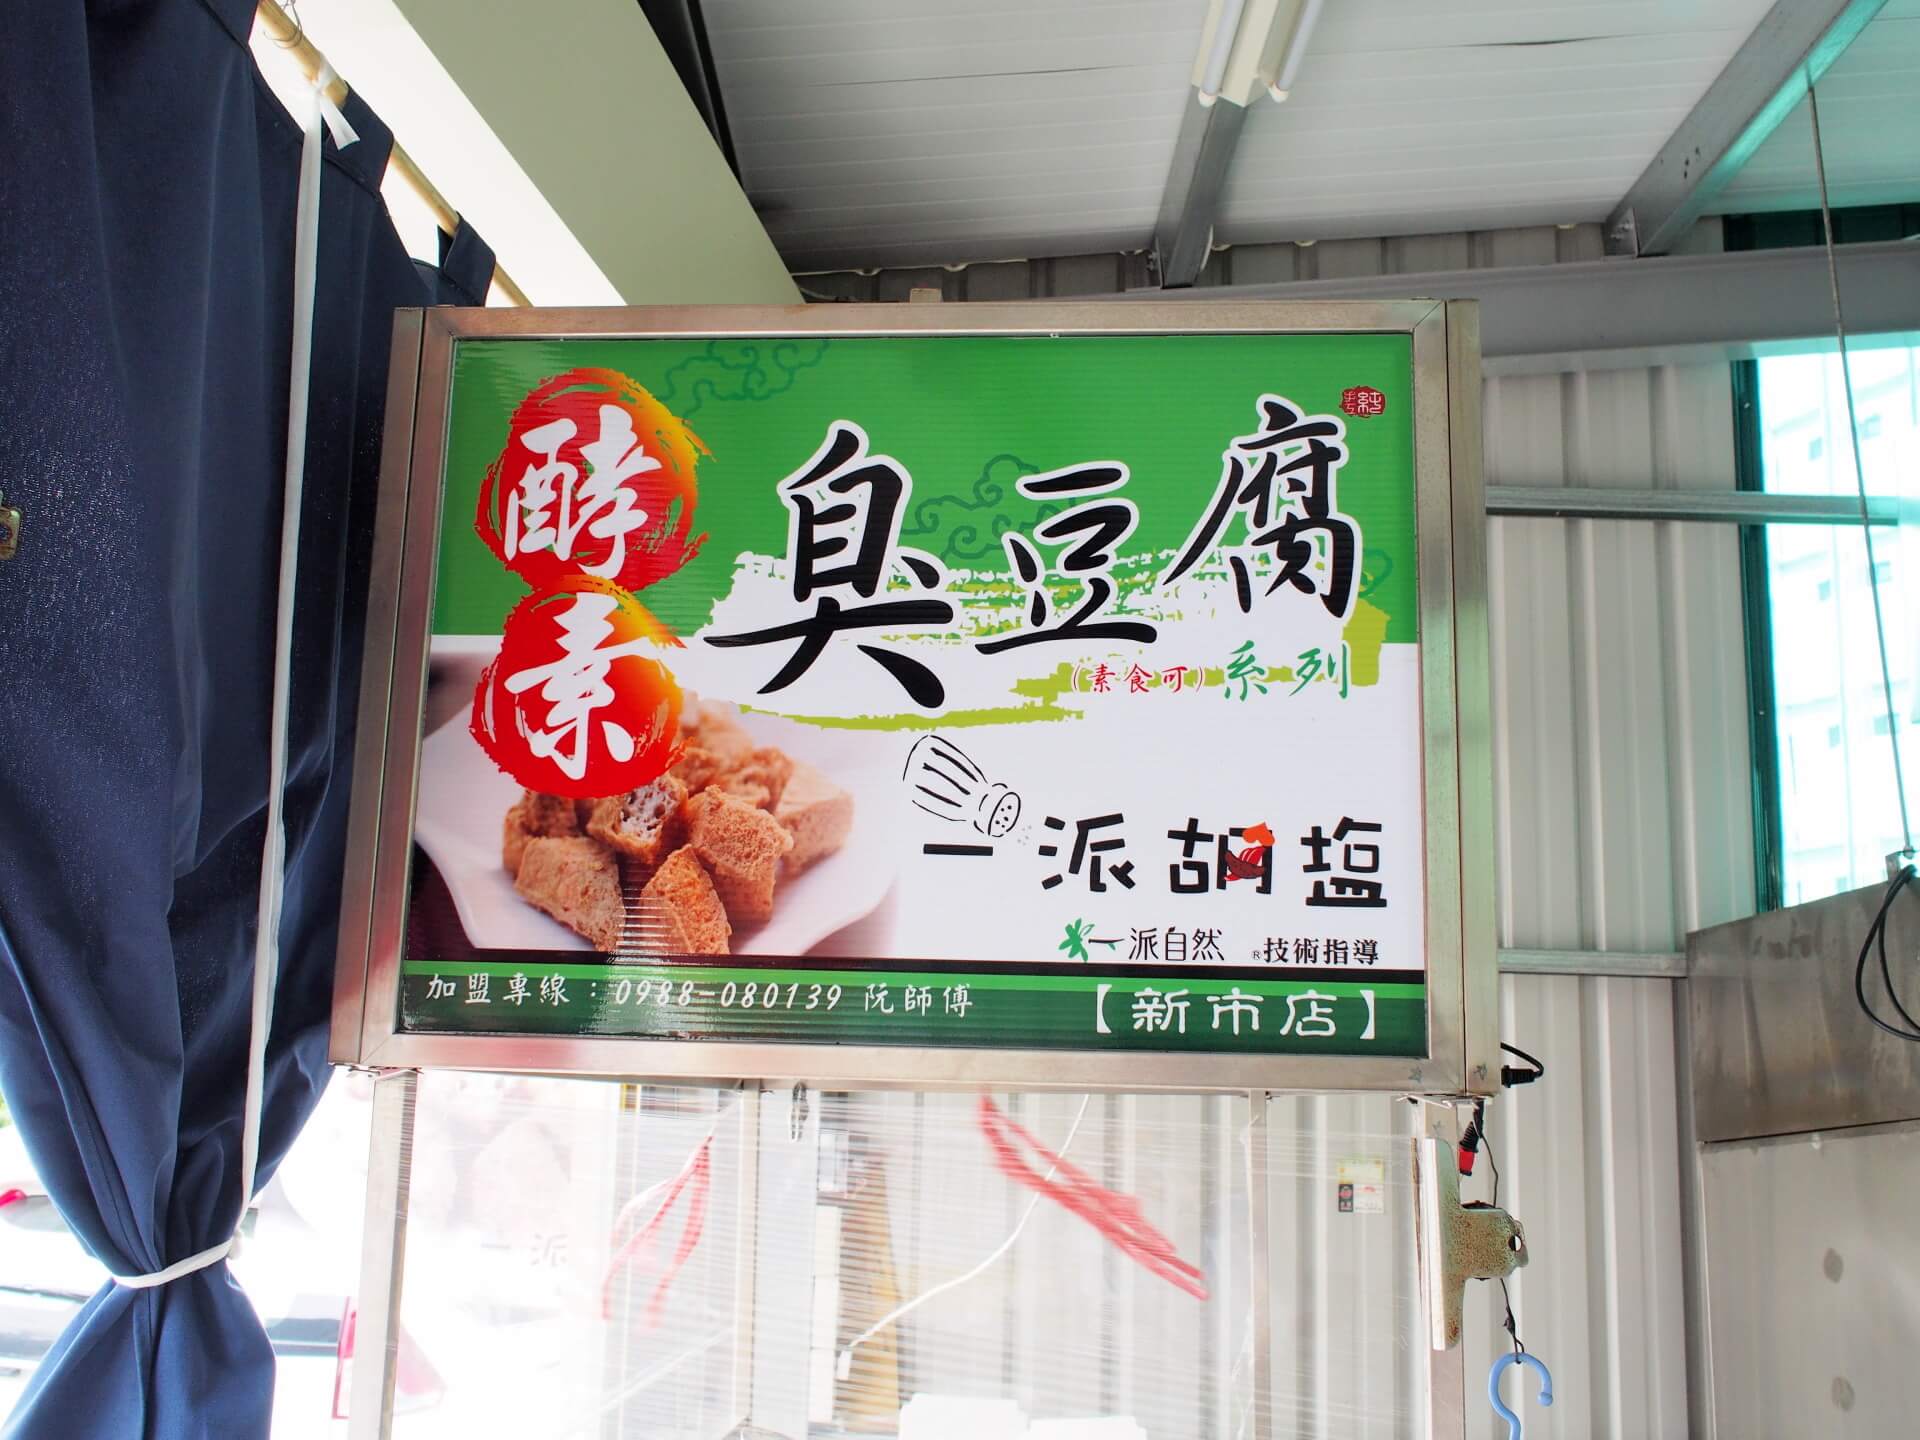 台南新市素食 一派胡塩酵素臭豆腐新市店 五星級臭豆腐 近南科素食小吃 G T Wang